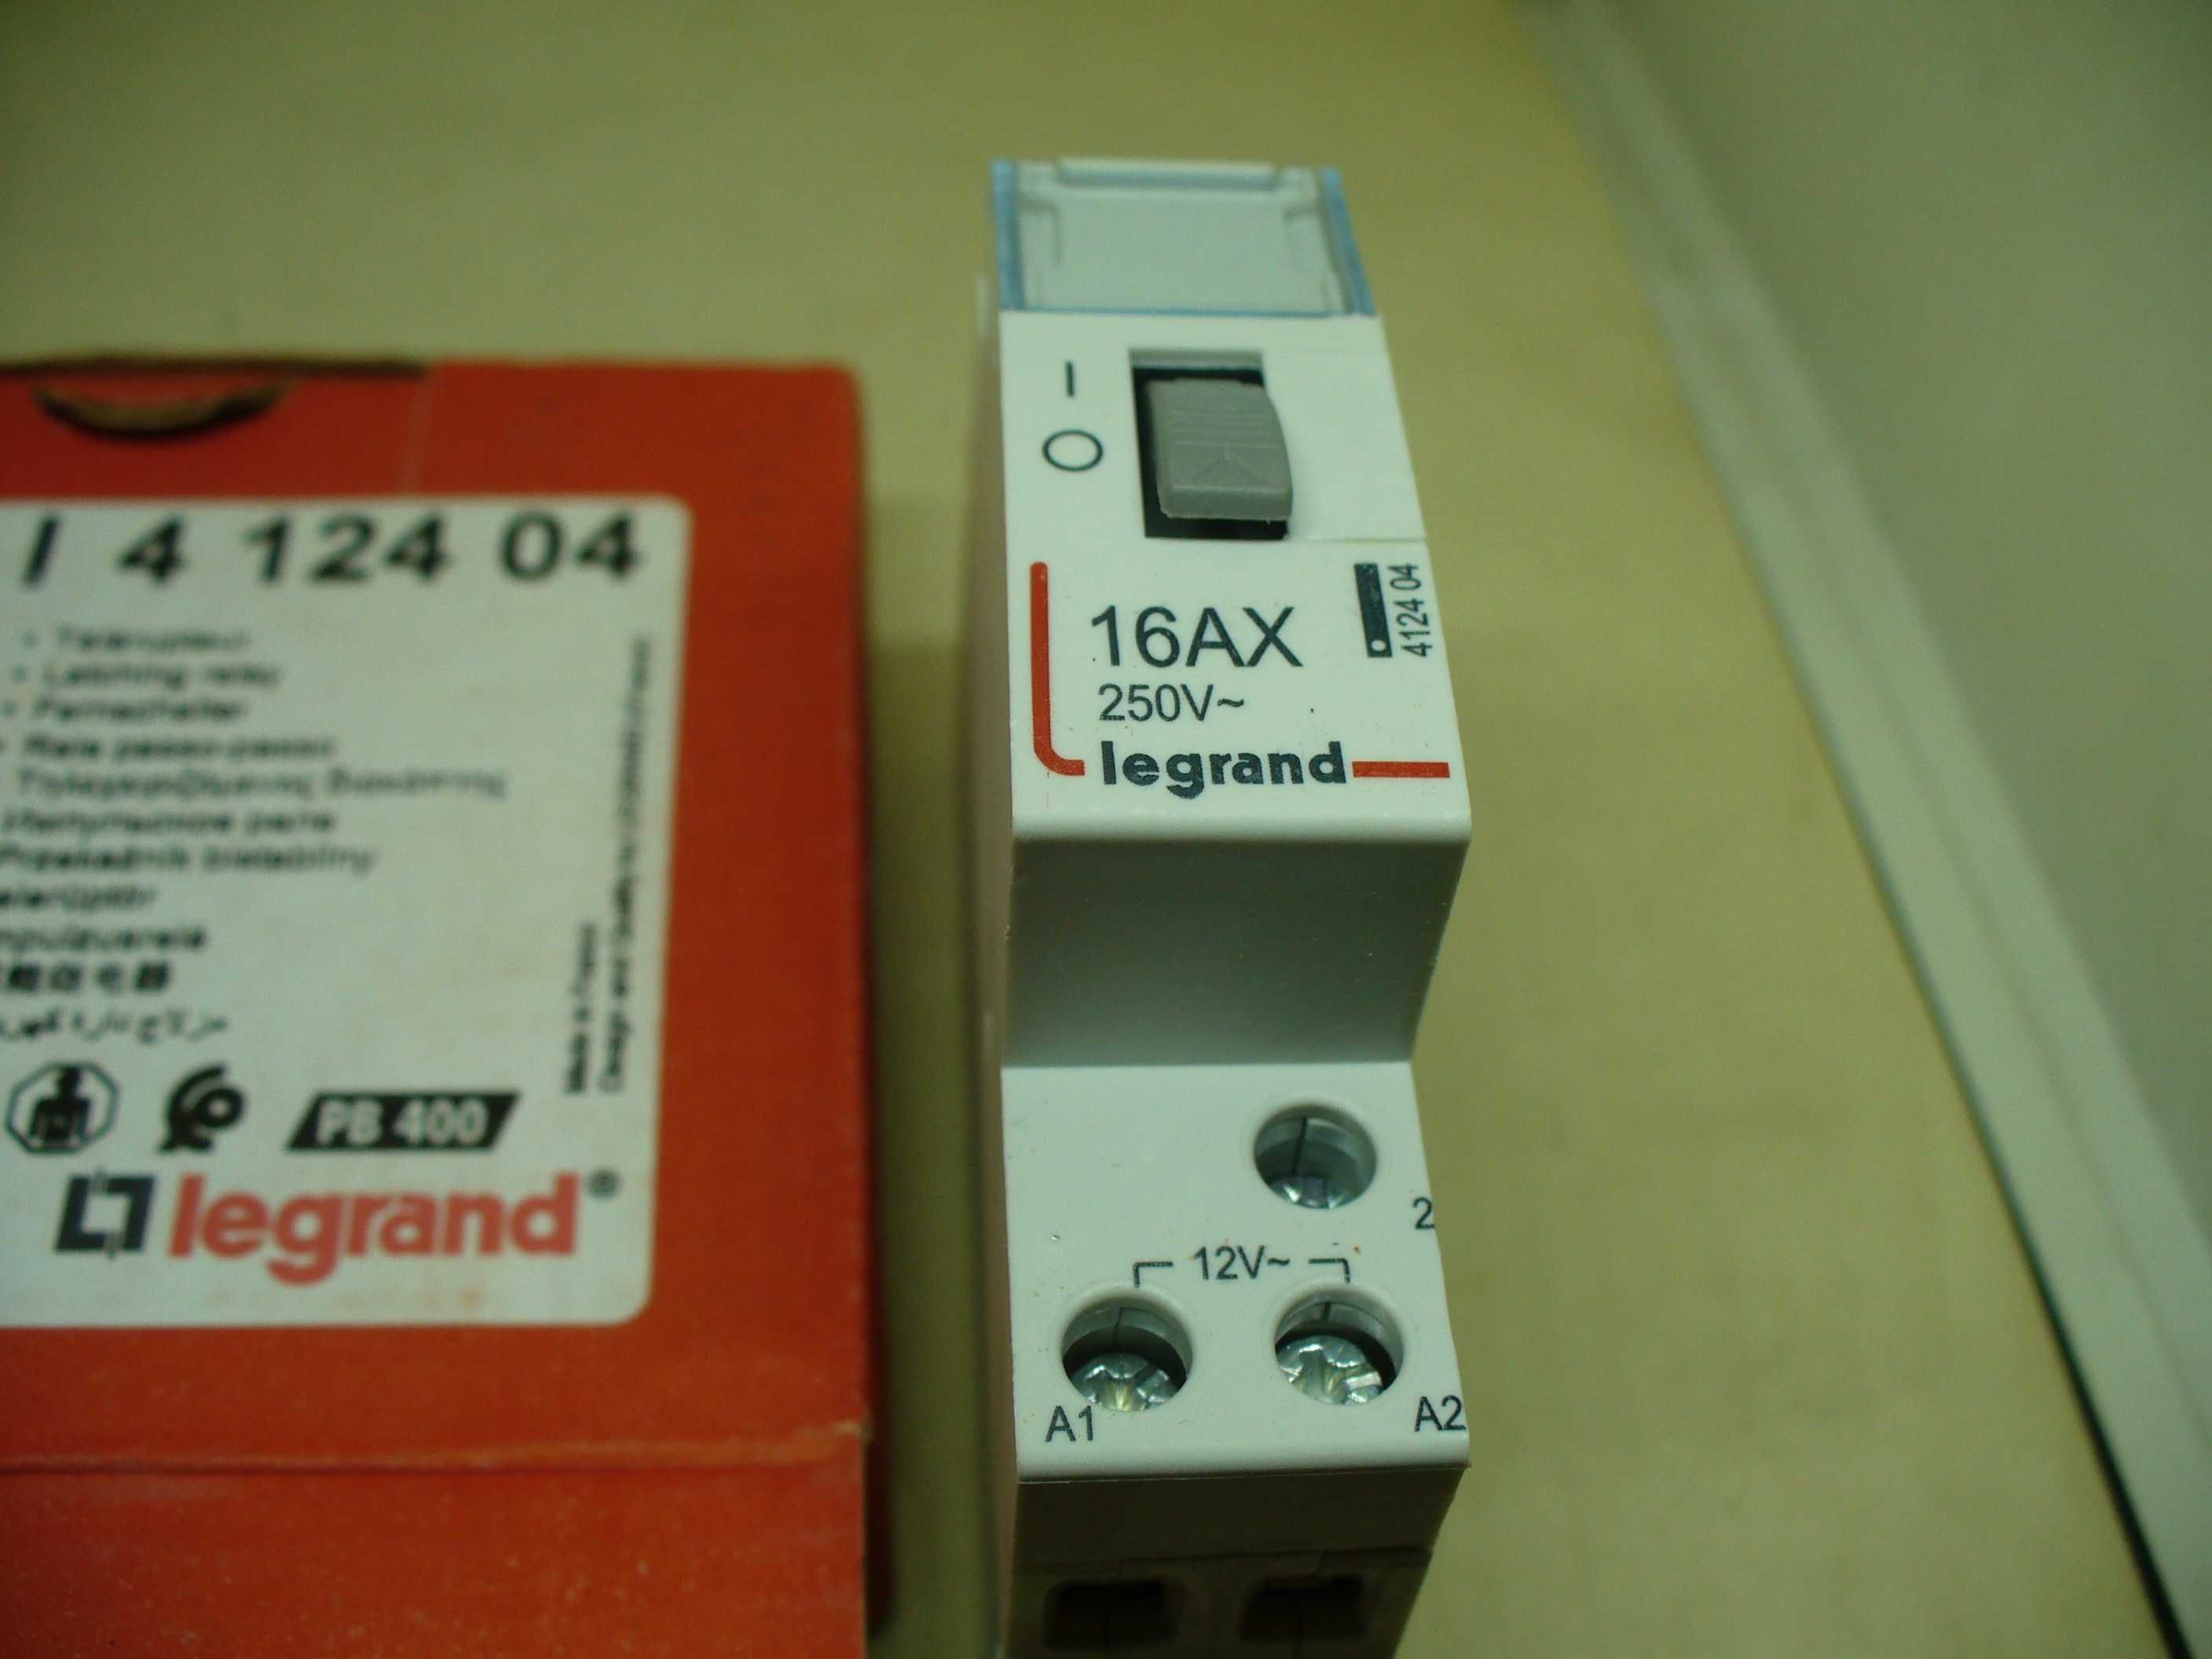 Przekaźnik bistabilny instalacyjny LEGRAND PB 400